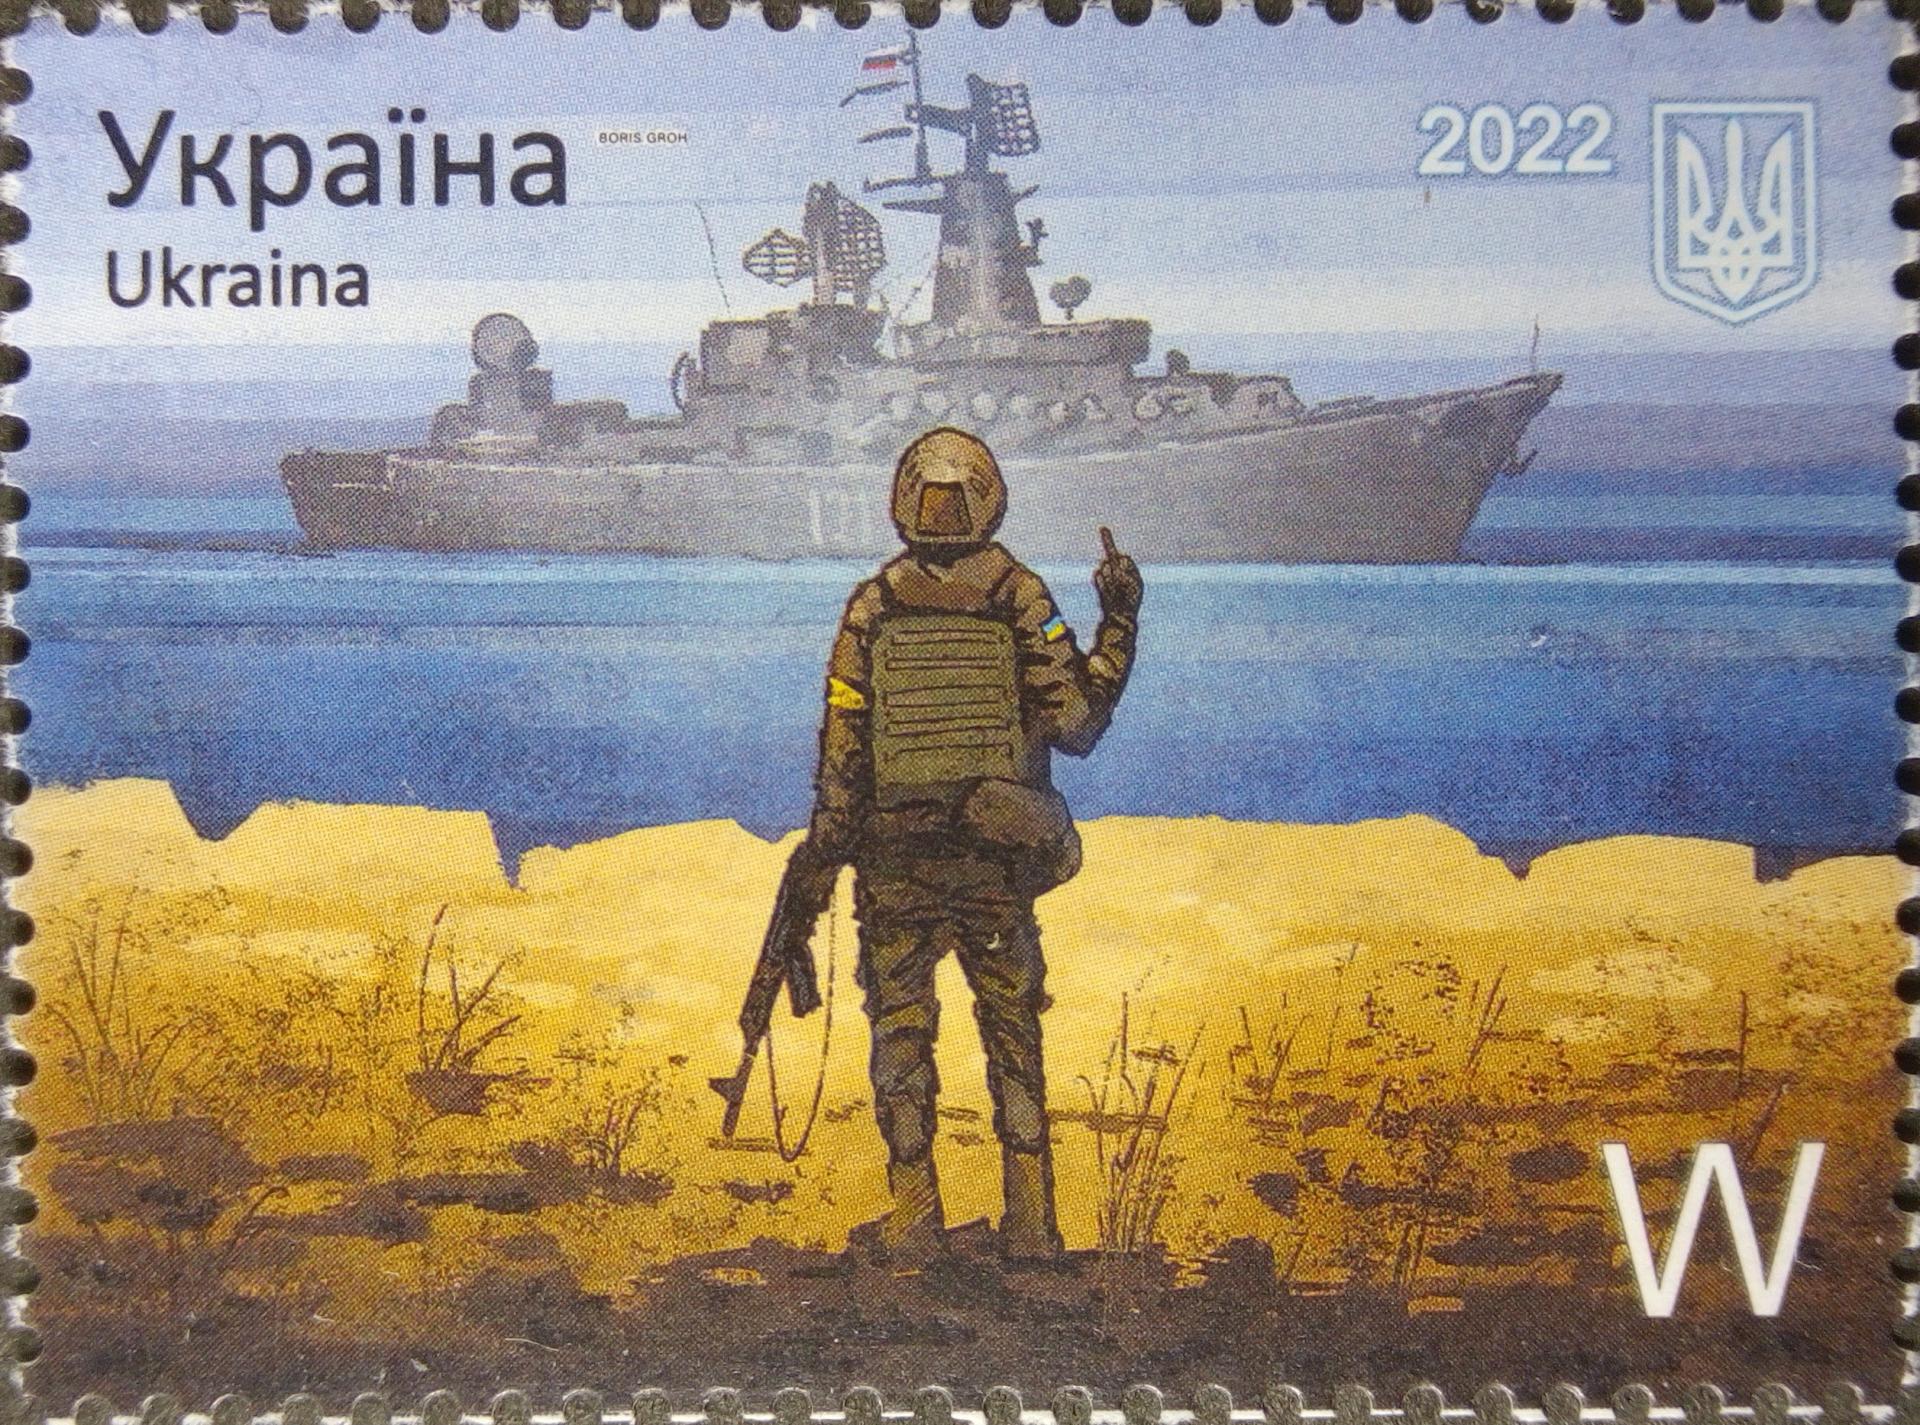 Poštová známka, ktorá znázorňuje hrdinské gesto potopenému krížniku Moskva z prvých dní vojny. 